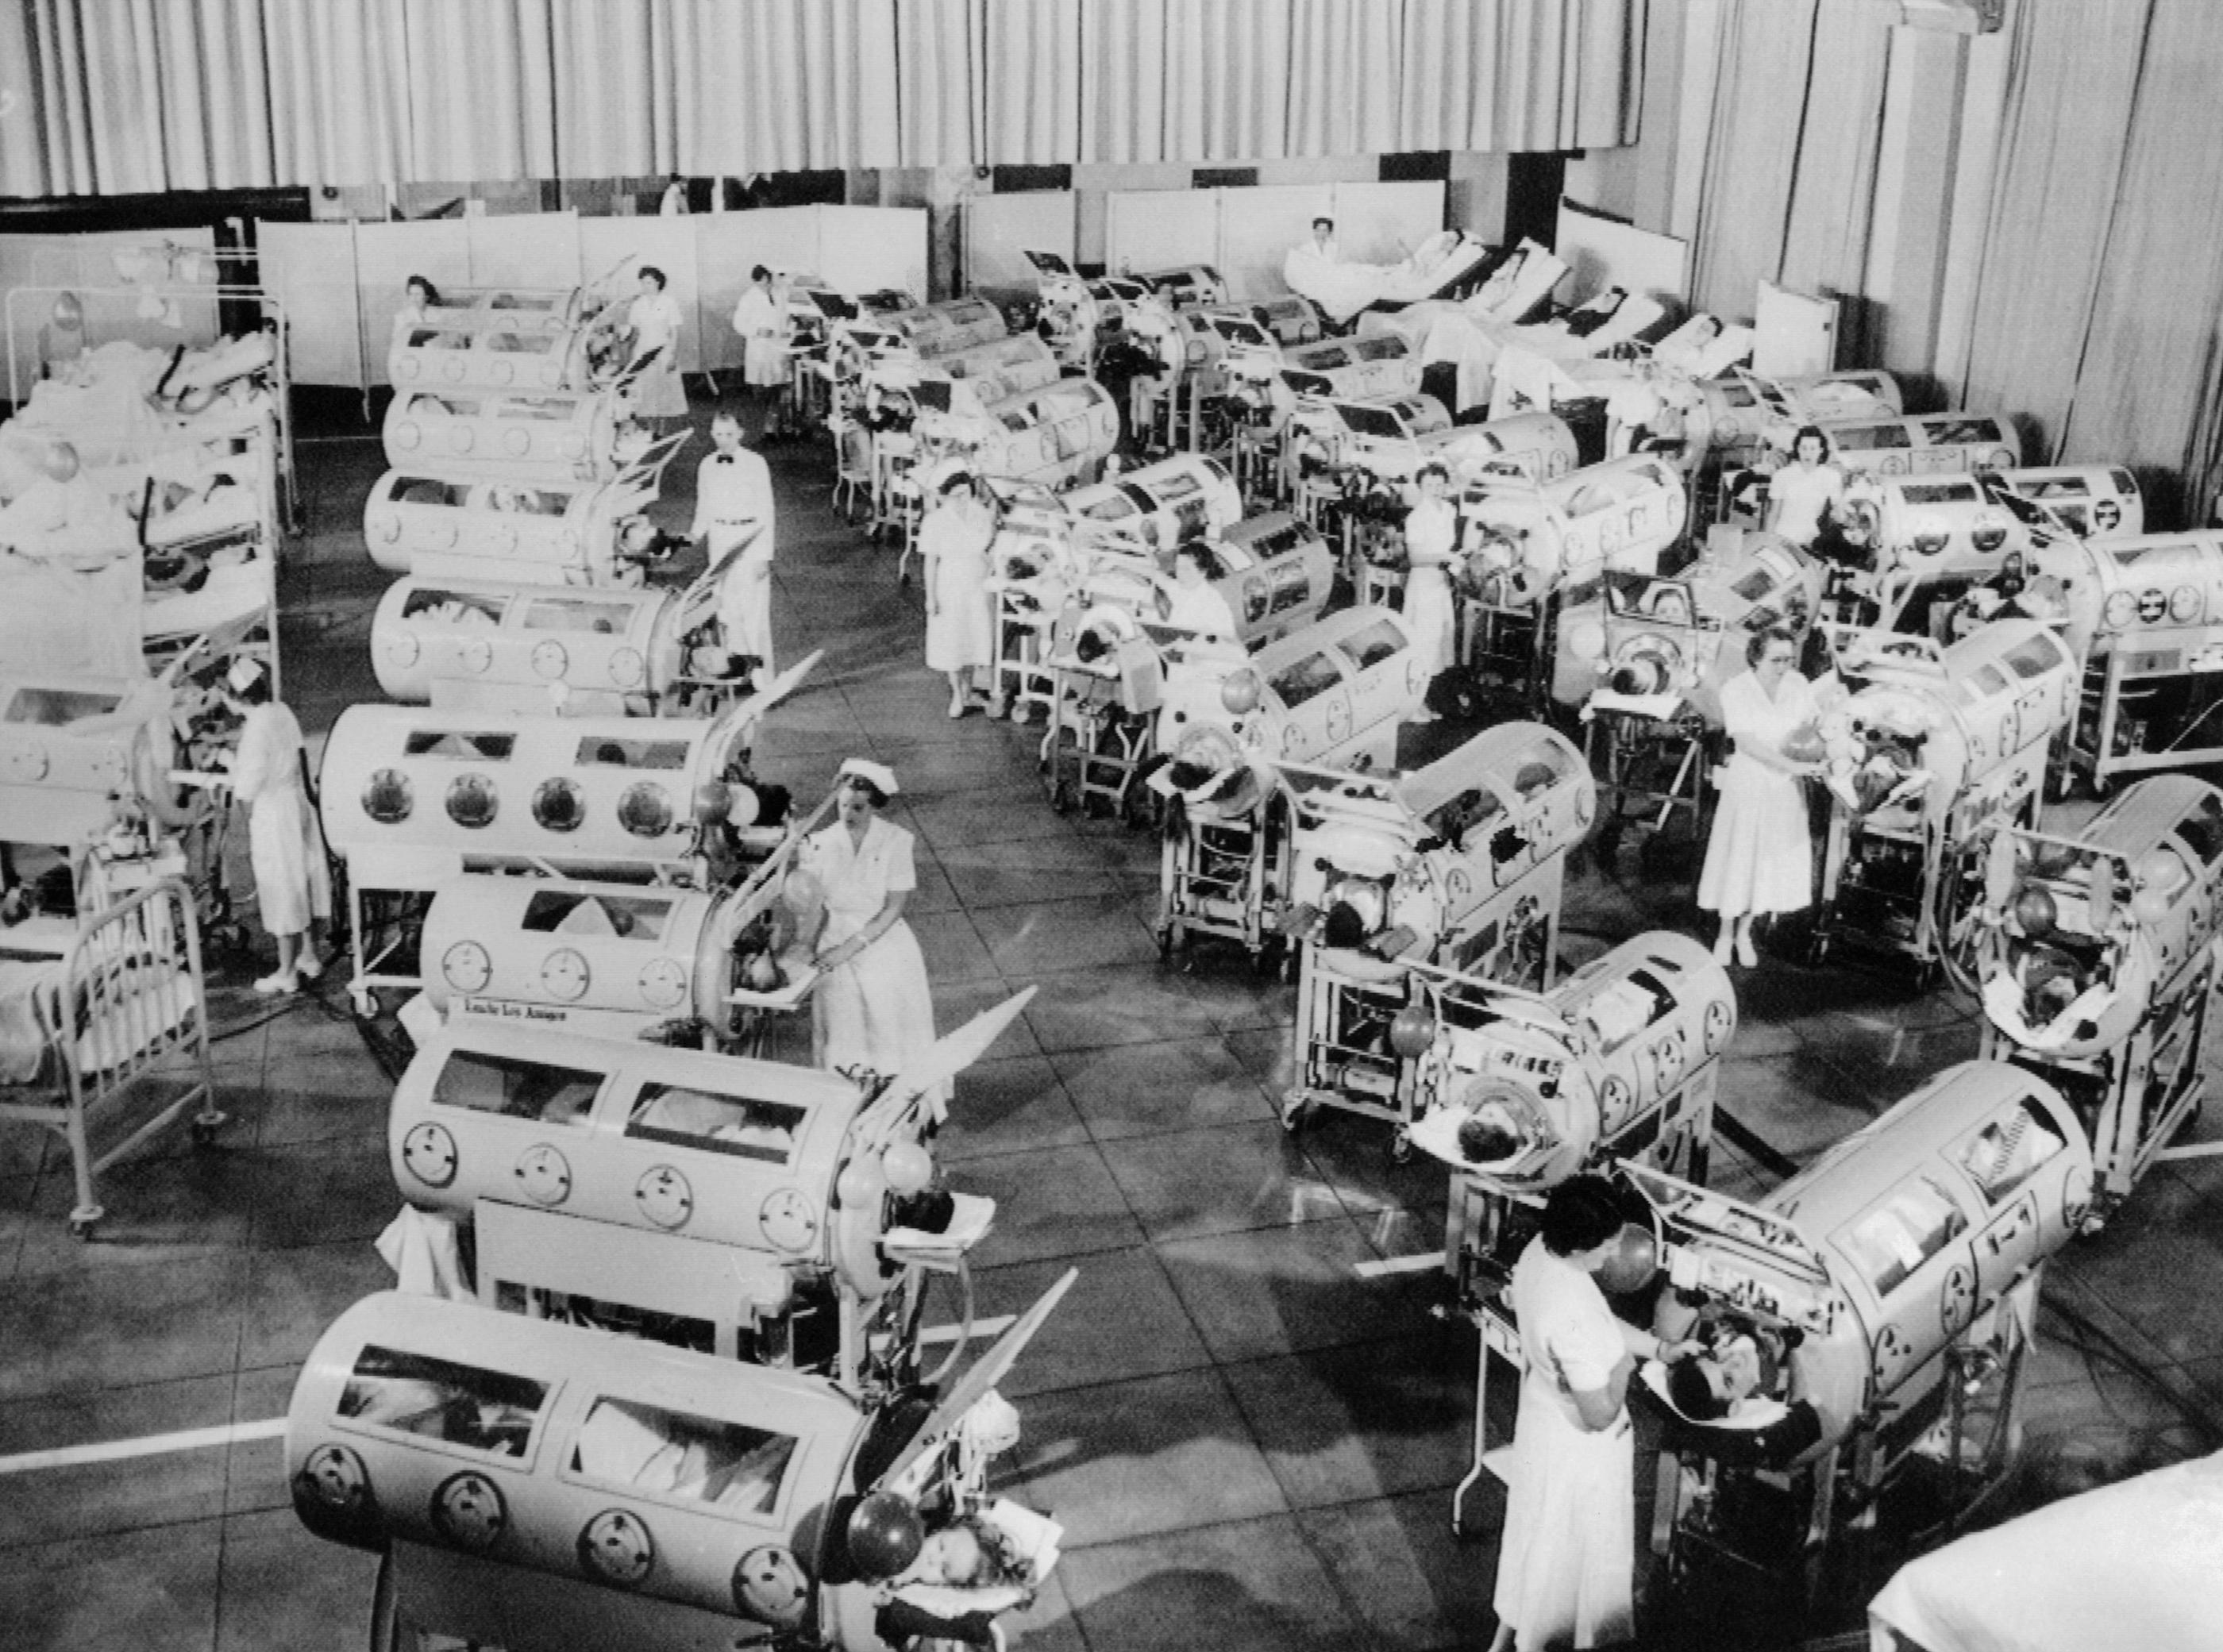 Des infirmières s'affairent dans une salle remplie de patients atteints de poliomyélite et pris en charge dans des poumons d'acier, au centre respiratoire Rancho Los Amigos, à Hondo (Californie), en 1953. Archives CSU/Collection Everett